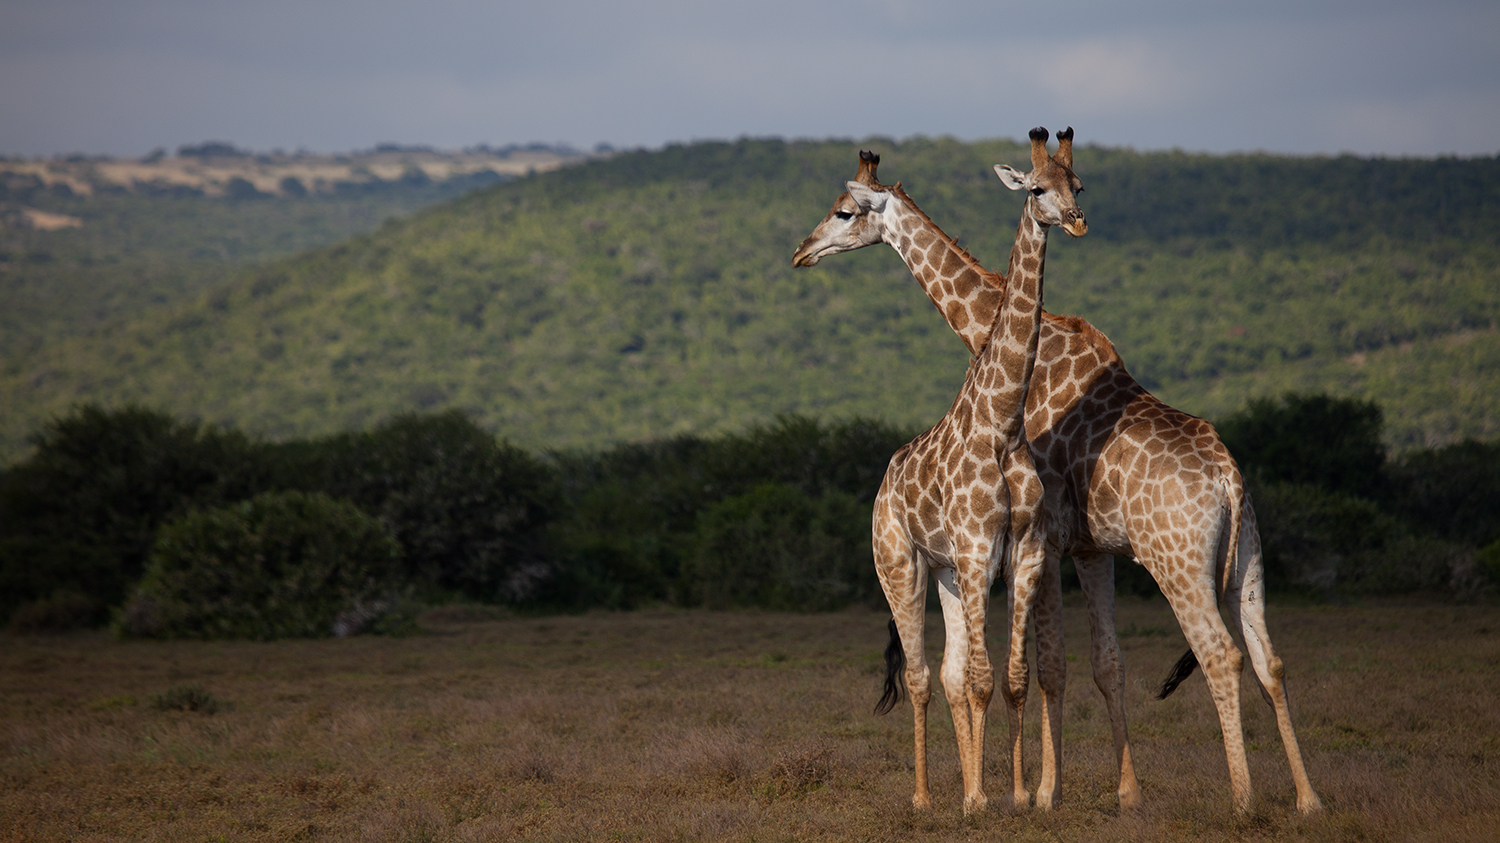 Girafa sul africana / South African Giraffe / Giraffa camelopardalis giraffa